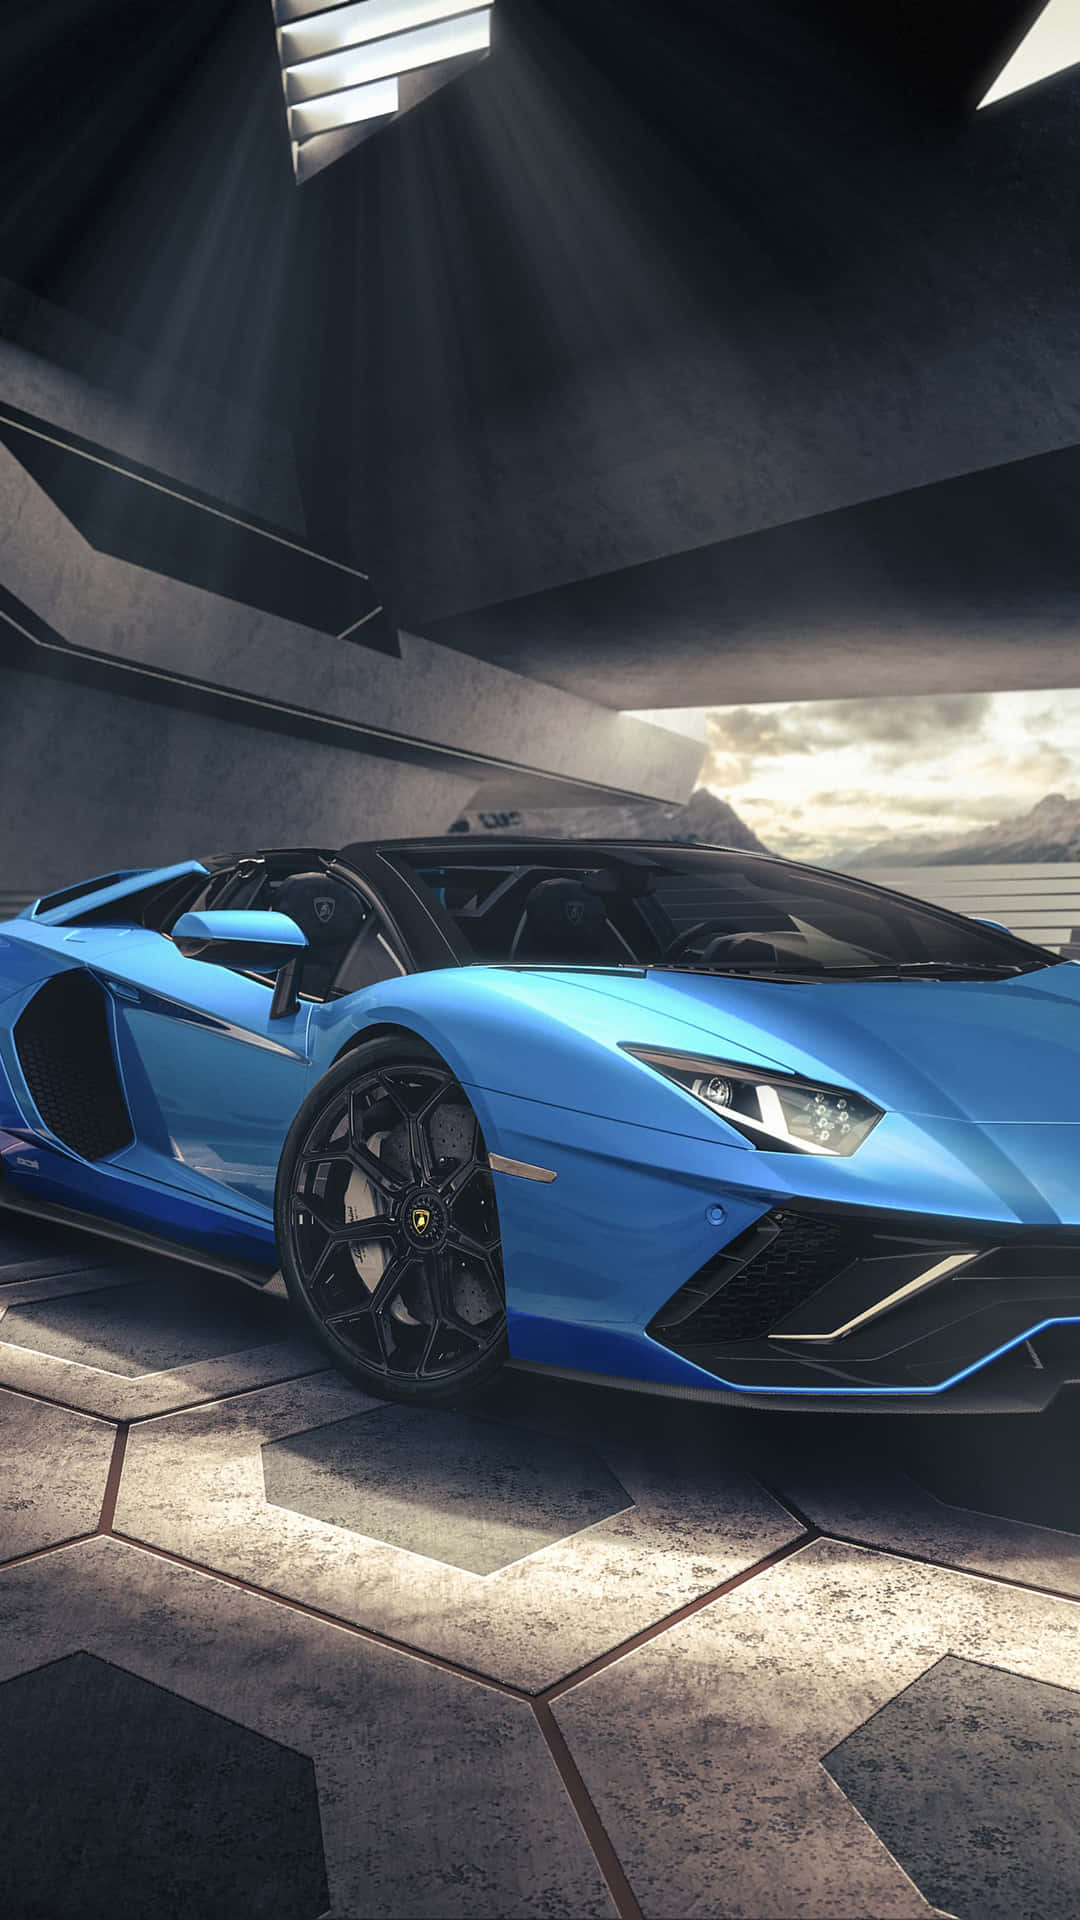 Erobernsie Die Stadt Mit Luxus Und Stil In Diesem Blauen Lamborghini Iphone Wallpaper